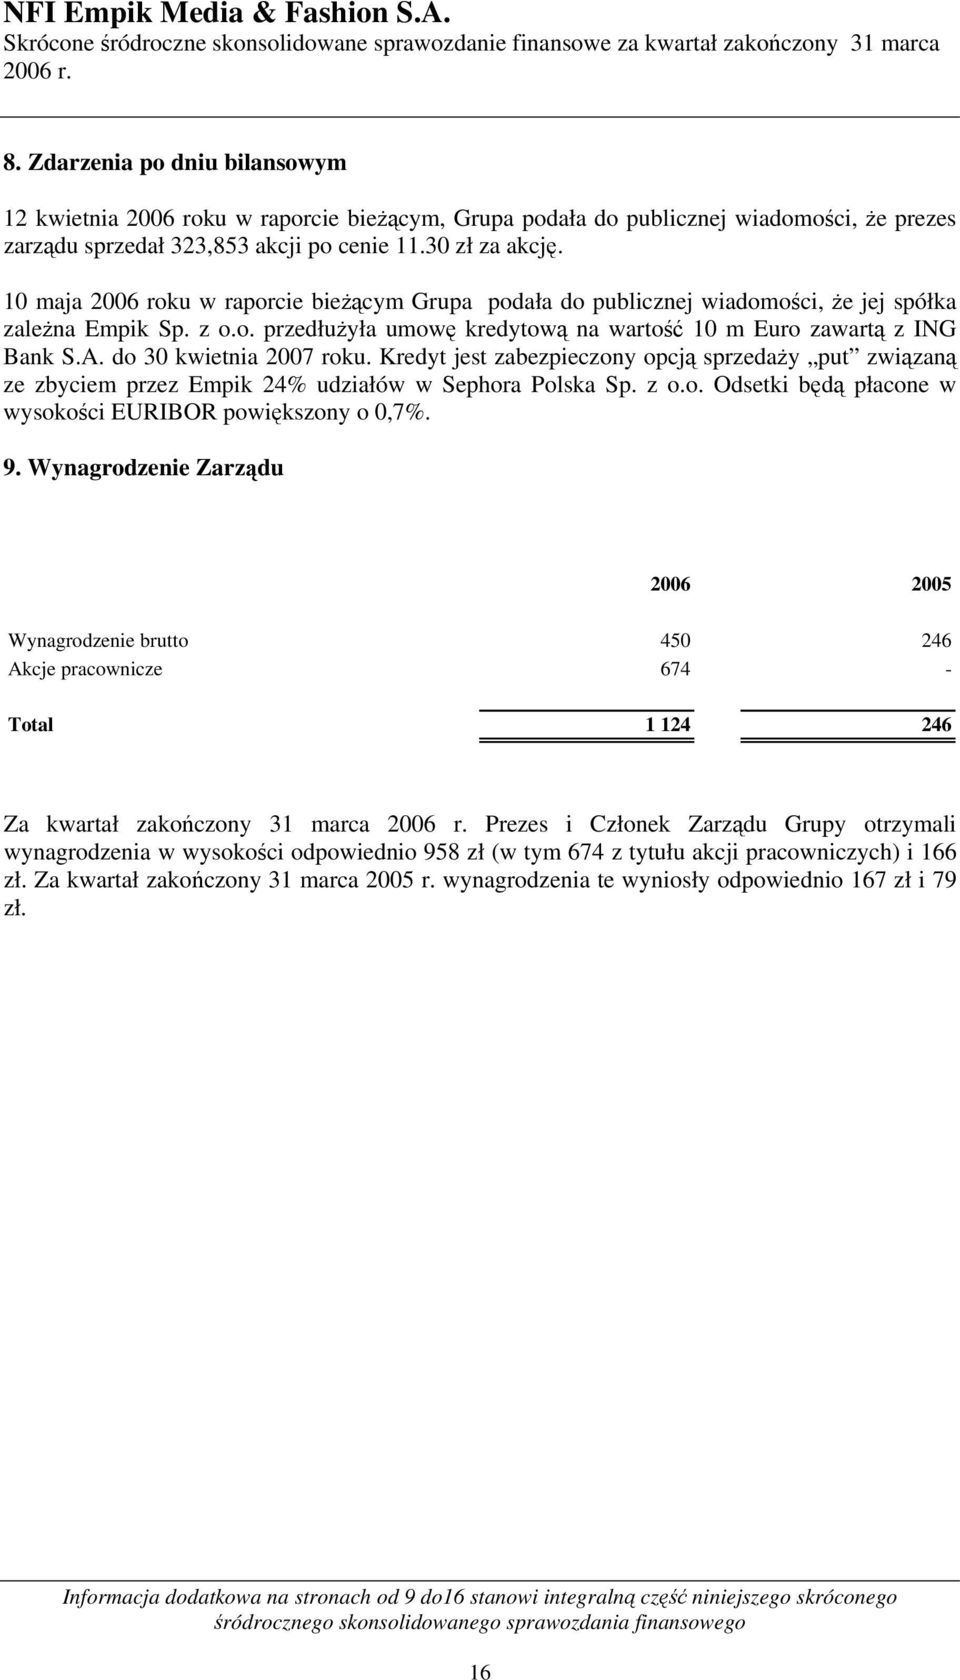 do 30 kwietnia 2007 roku. Kredyt jest zabezpieczony opcją sprzedaży put związaną ze zbyciem przez Empik 24% udziałów w Sephora Polska Sp. z o.o. Odsetki będą płacone w wysokości EURIBOR powiększony o 0,7%.